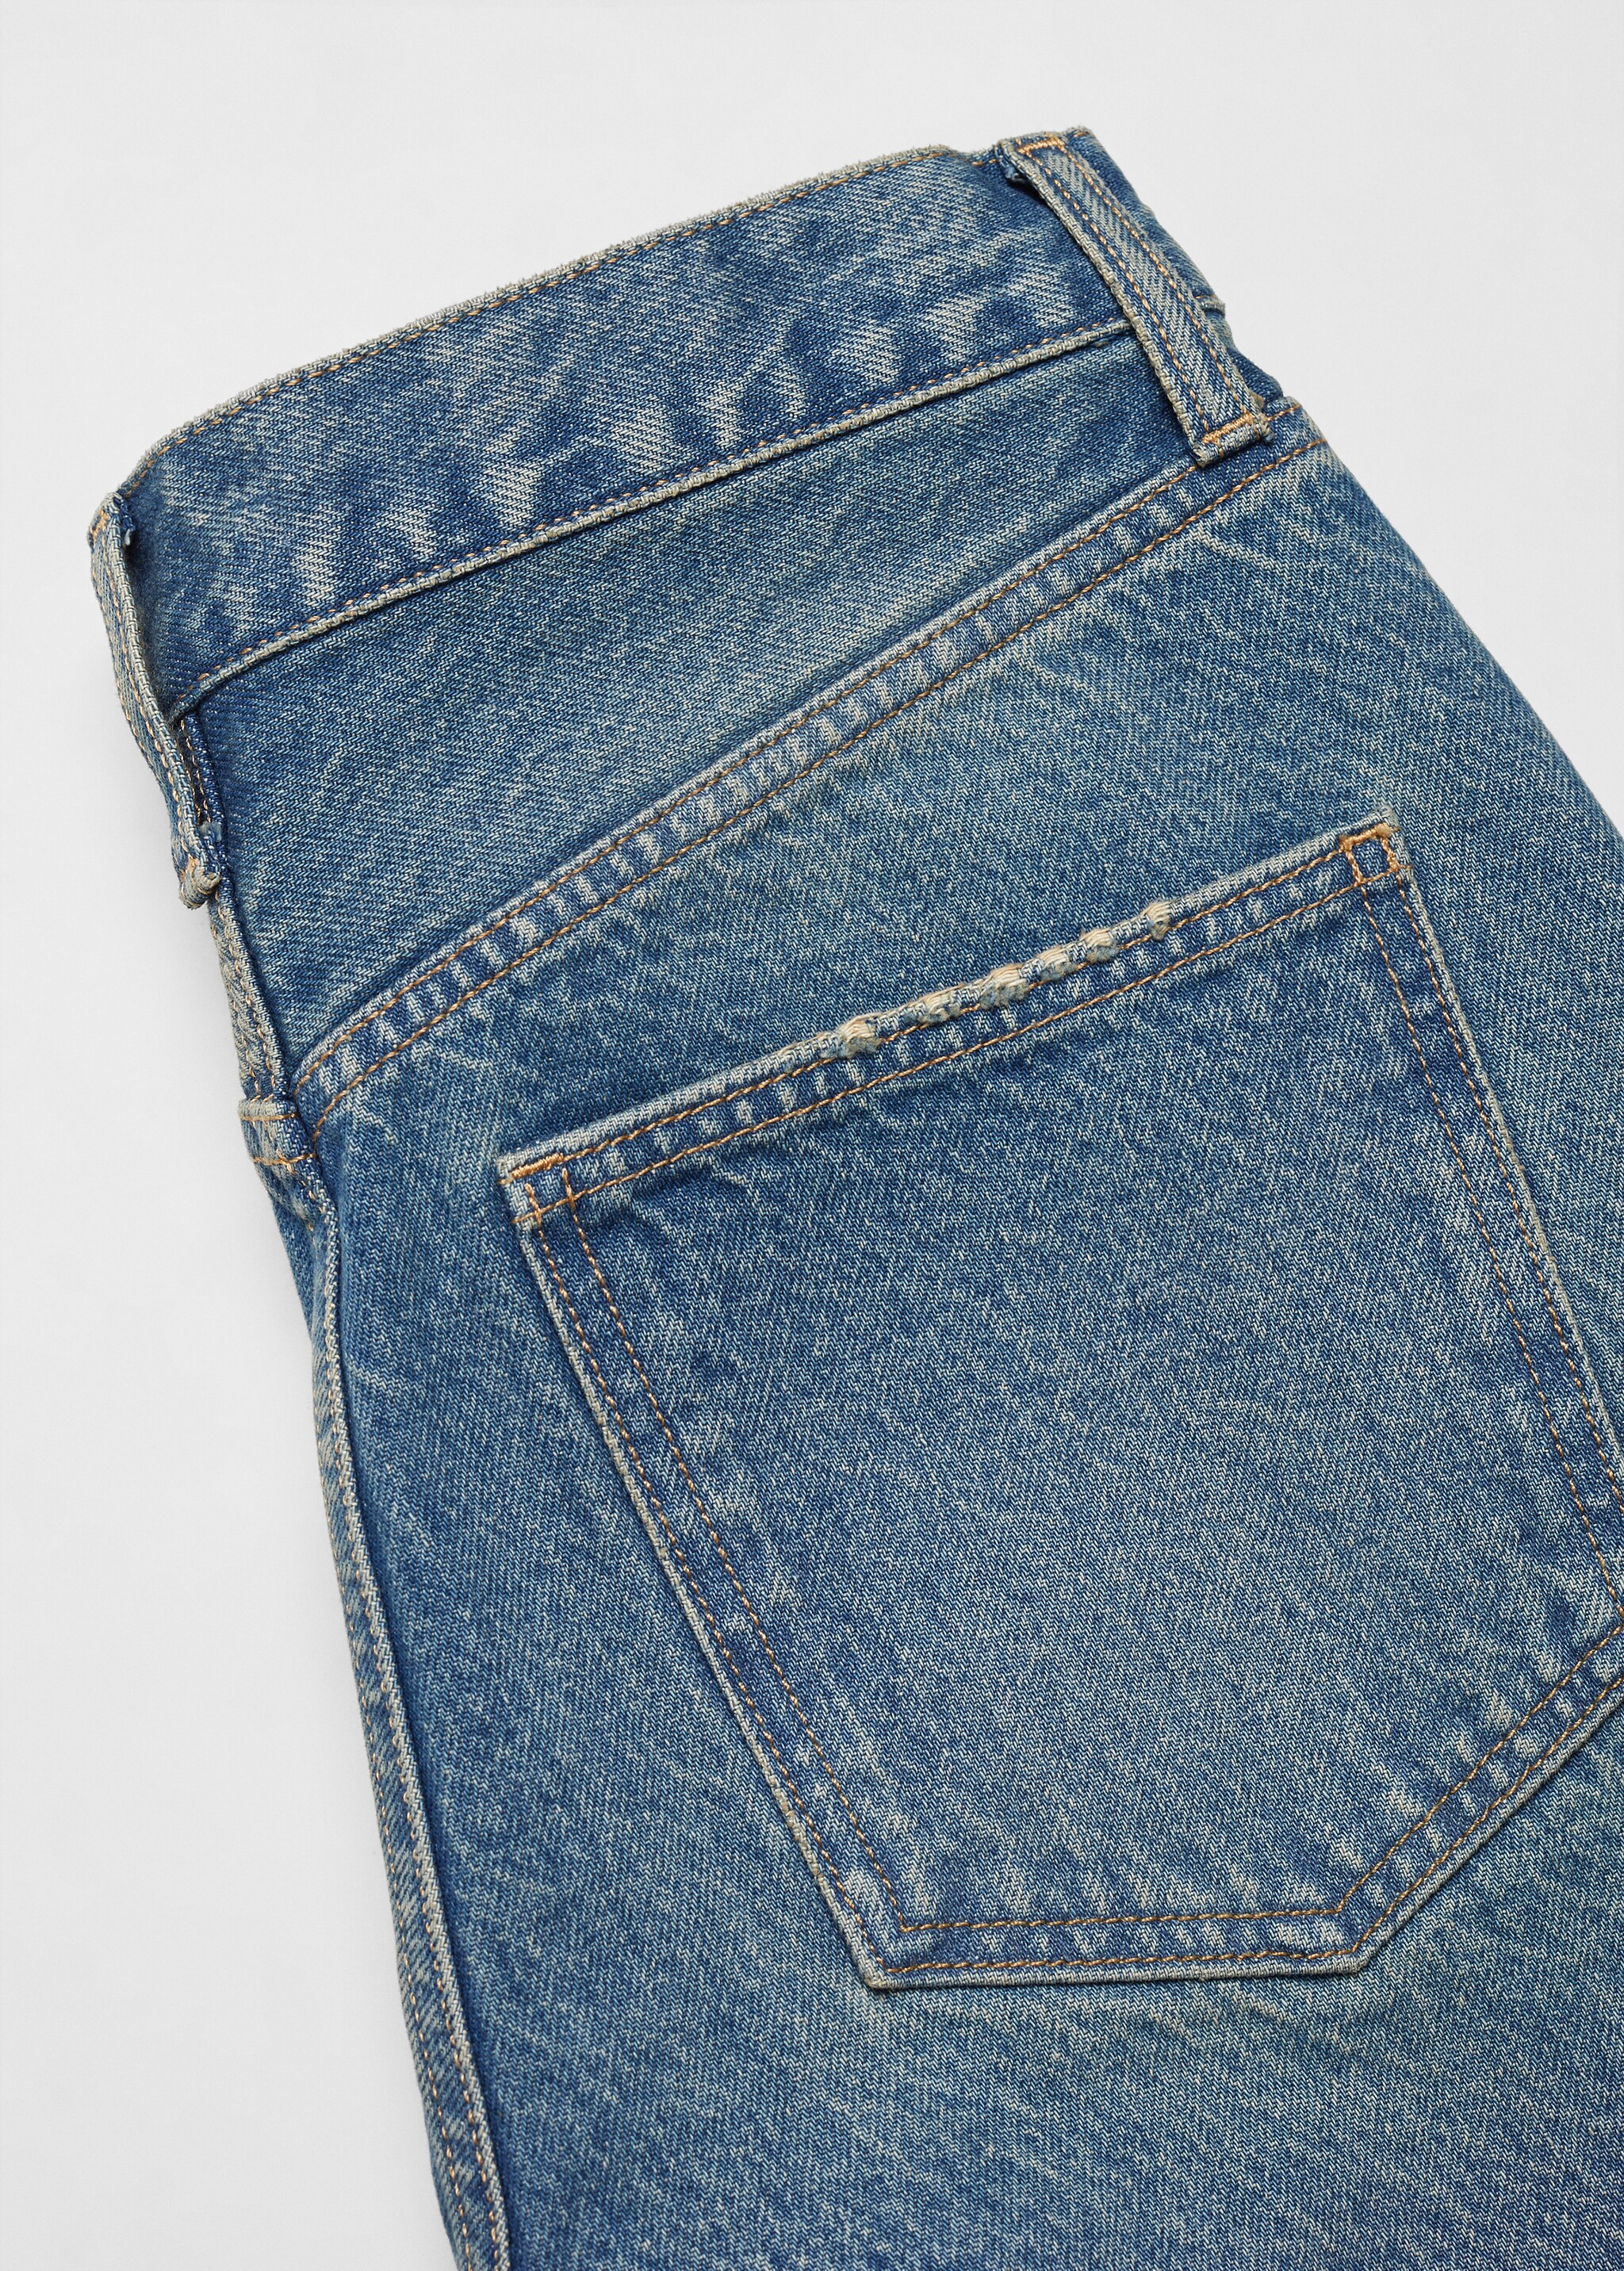 Jeans rectos tiro medio - Detalle del artículo 8